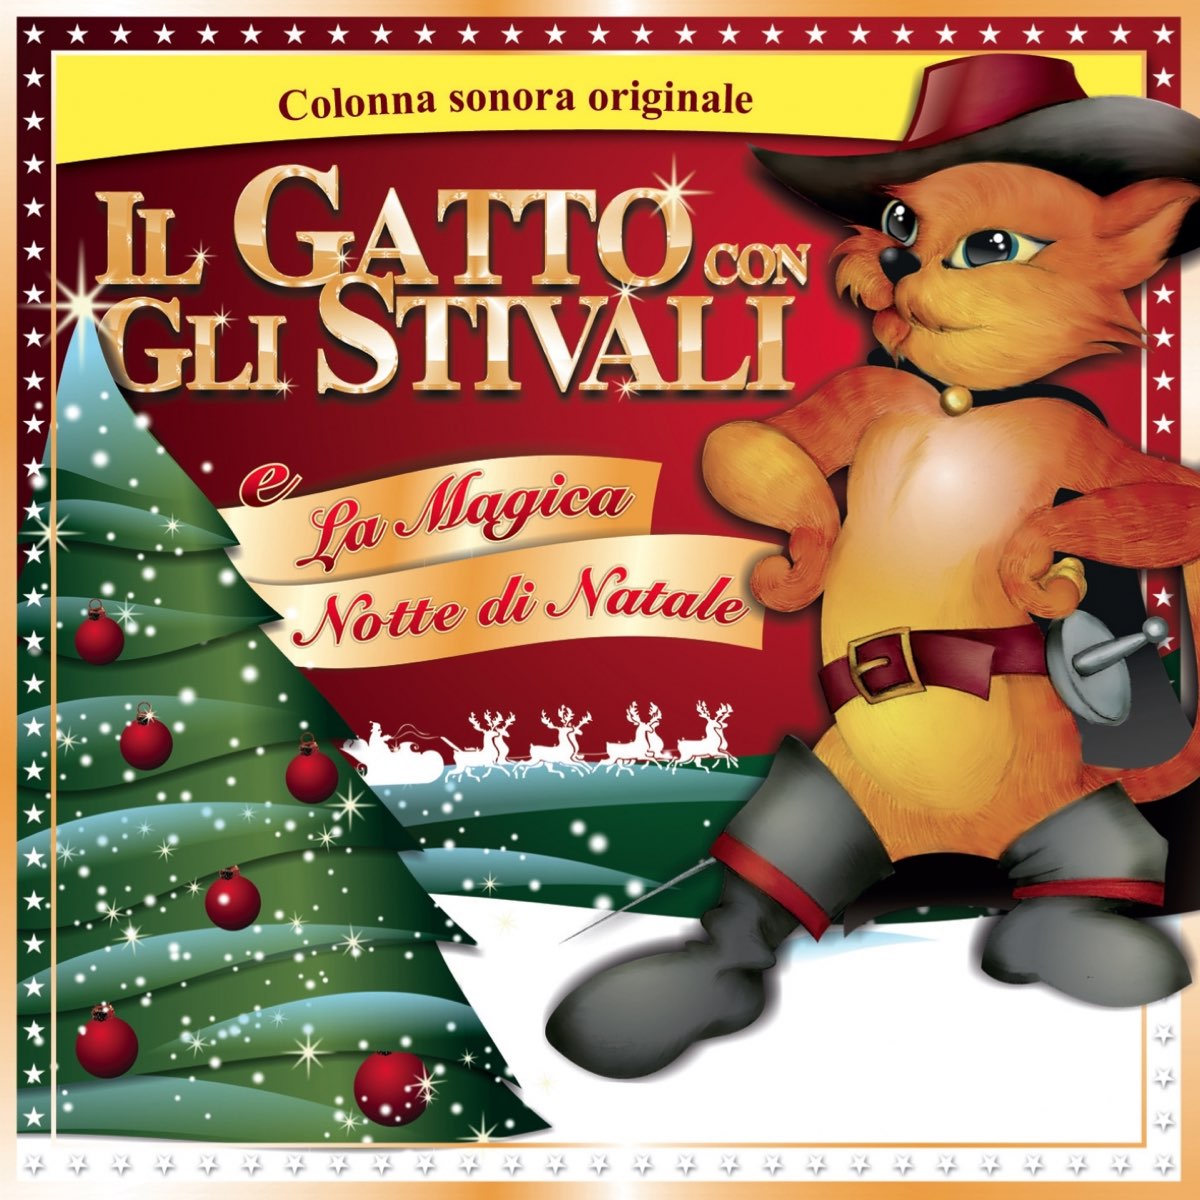 Il gatto con gli stivali e la magica notte di Natale (Musica dalla colonna  sonora originale) - Album by Various Artists - Apple Music